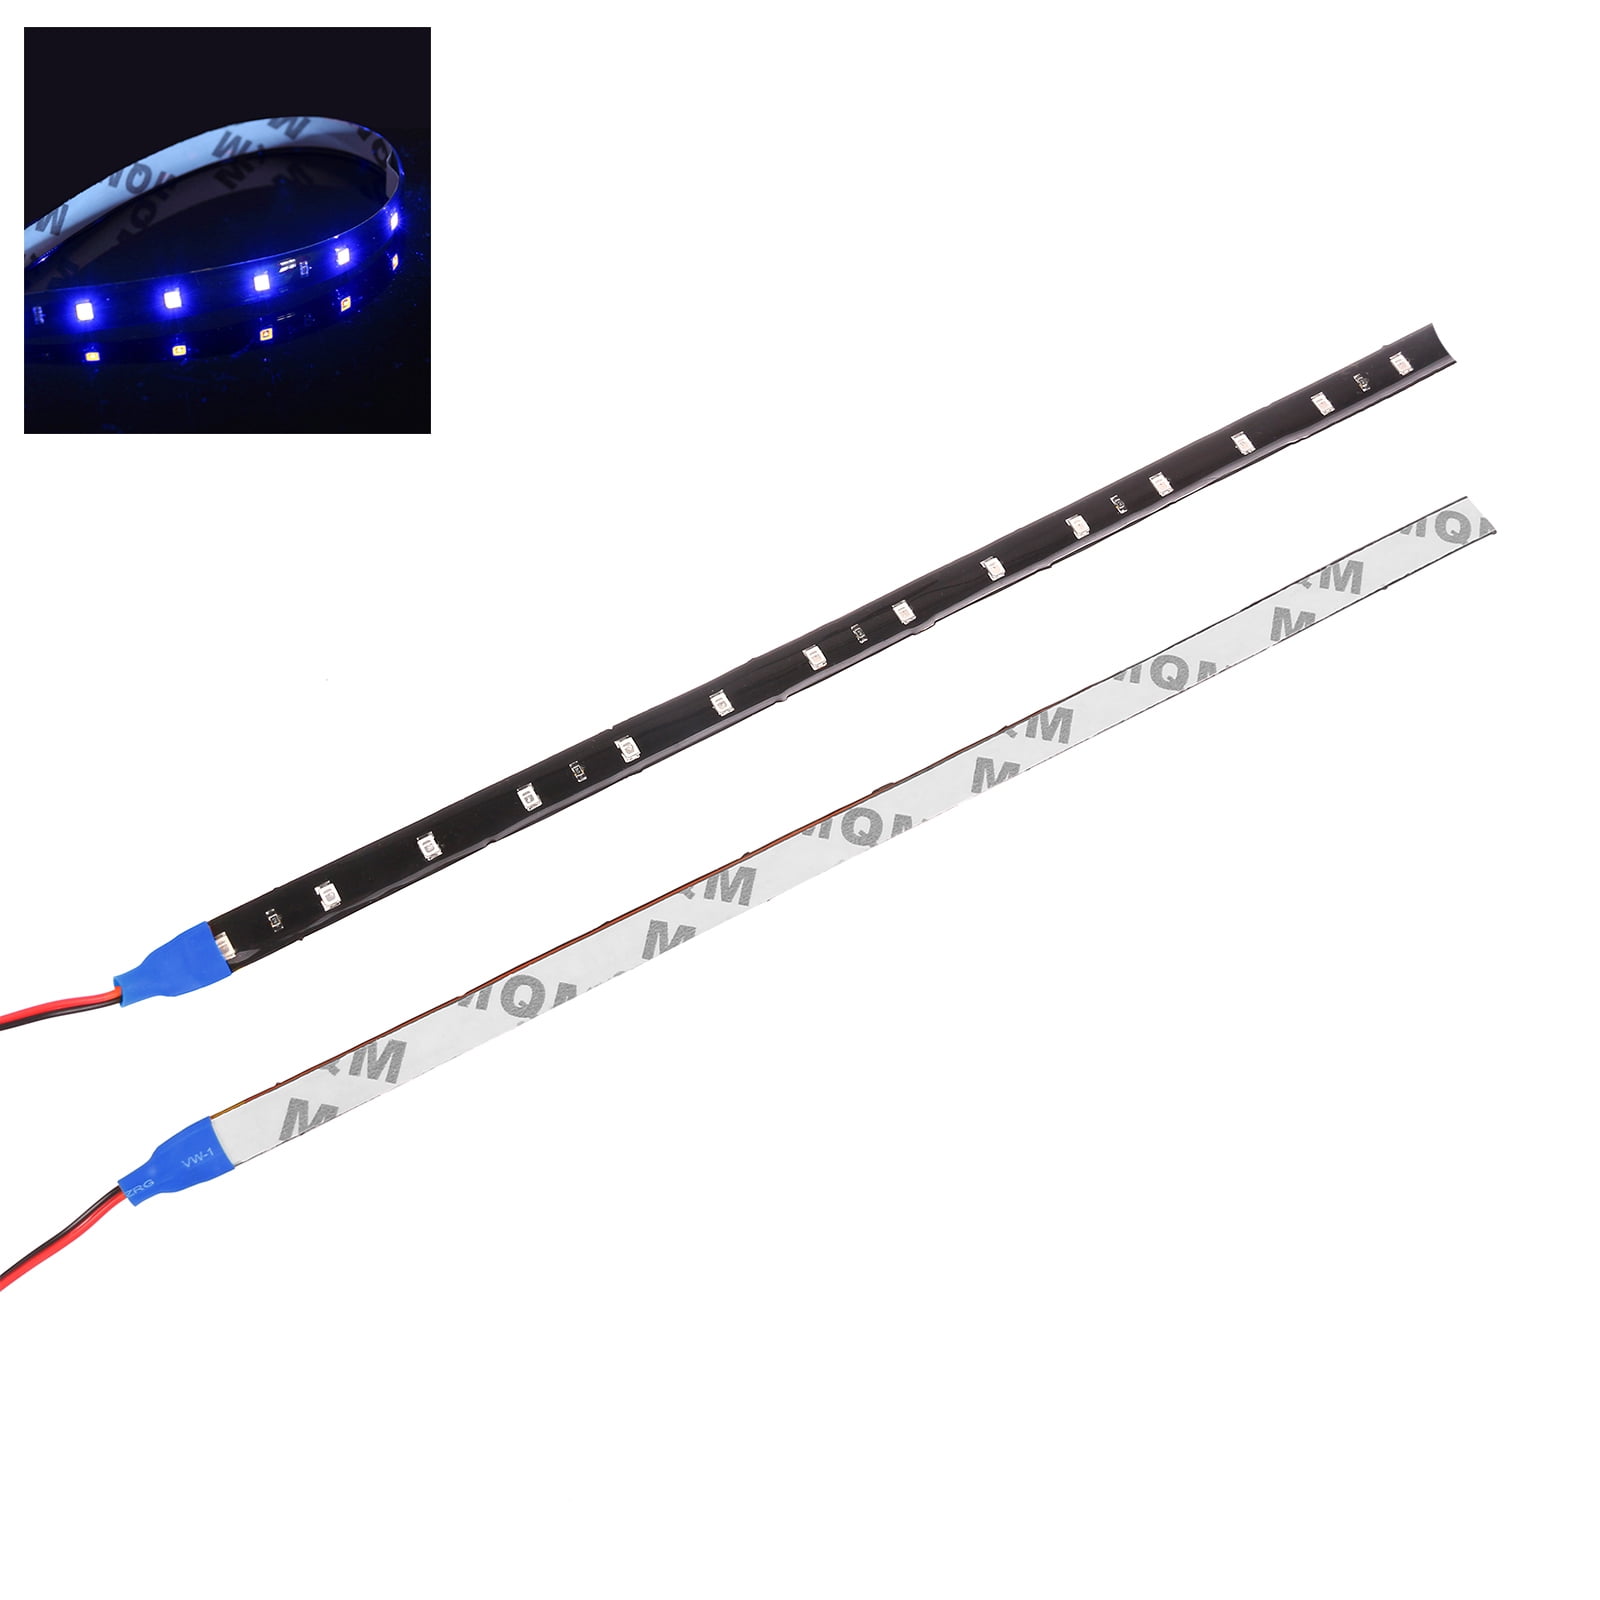 Waterproof LED Strip Light SMD 15leds/30cm Flexible LED Tape Lamp DC 12V Hot 